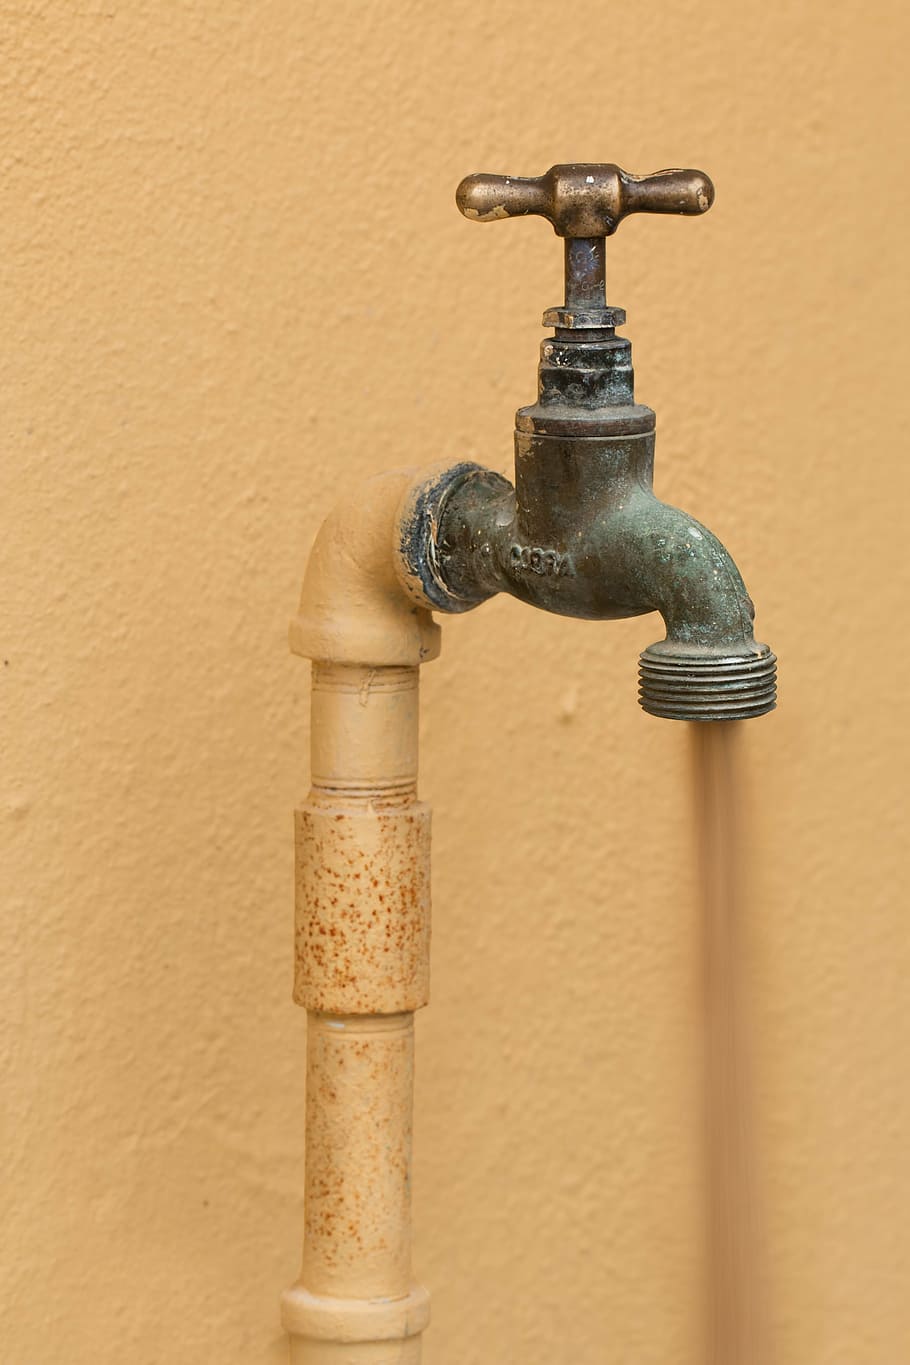 gray faucet, faucet, plumbing, tap, plumber, pipe, sanitary, repairman, water, dry